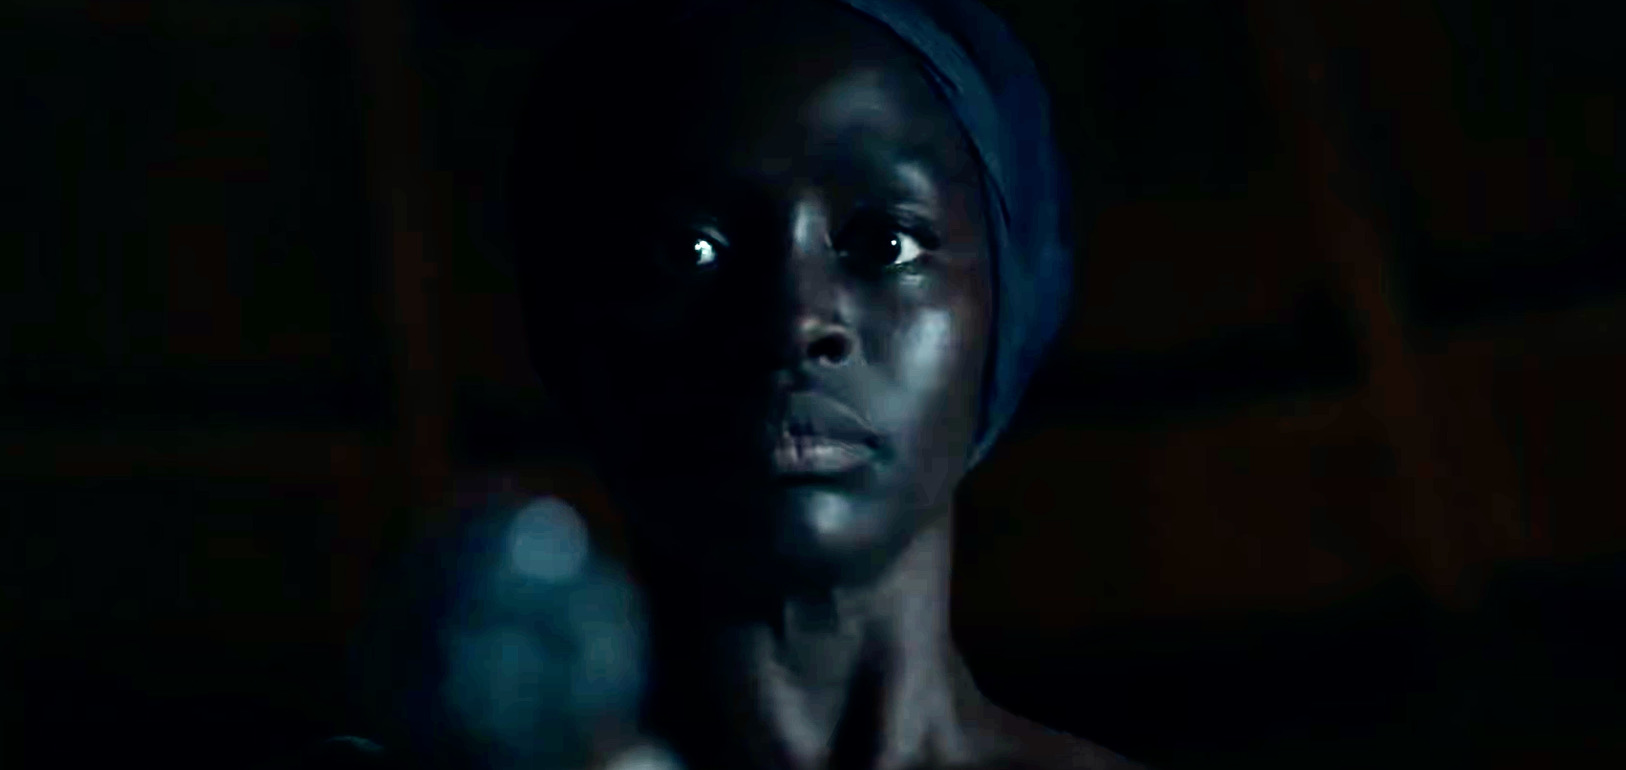 אישה אפרו אמריקאית מכוונת אקדח. מתוך הטריילר